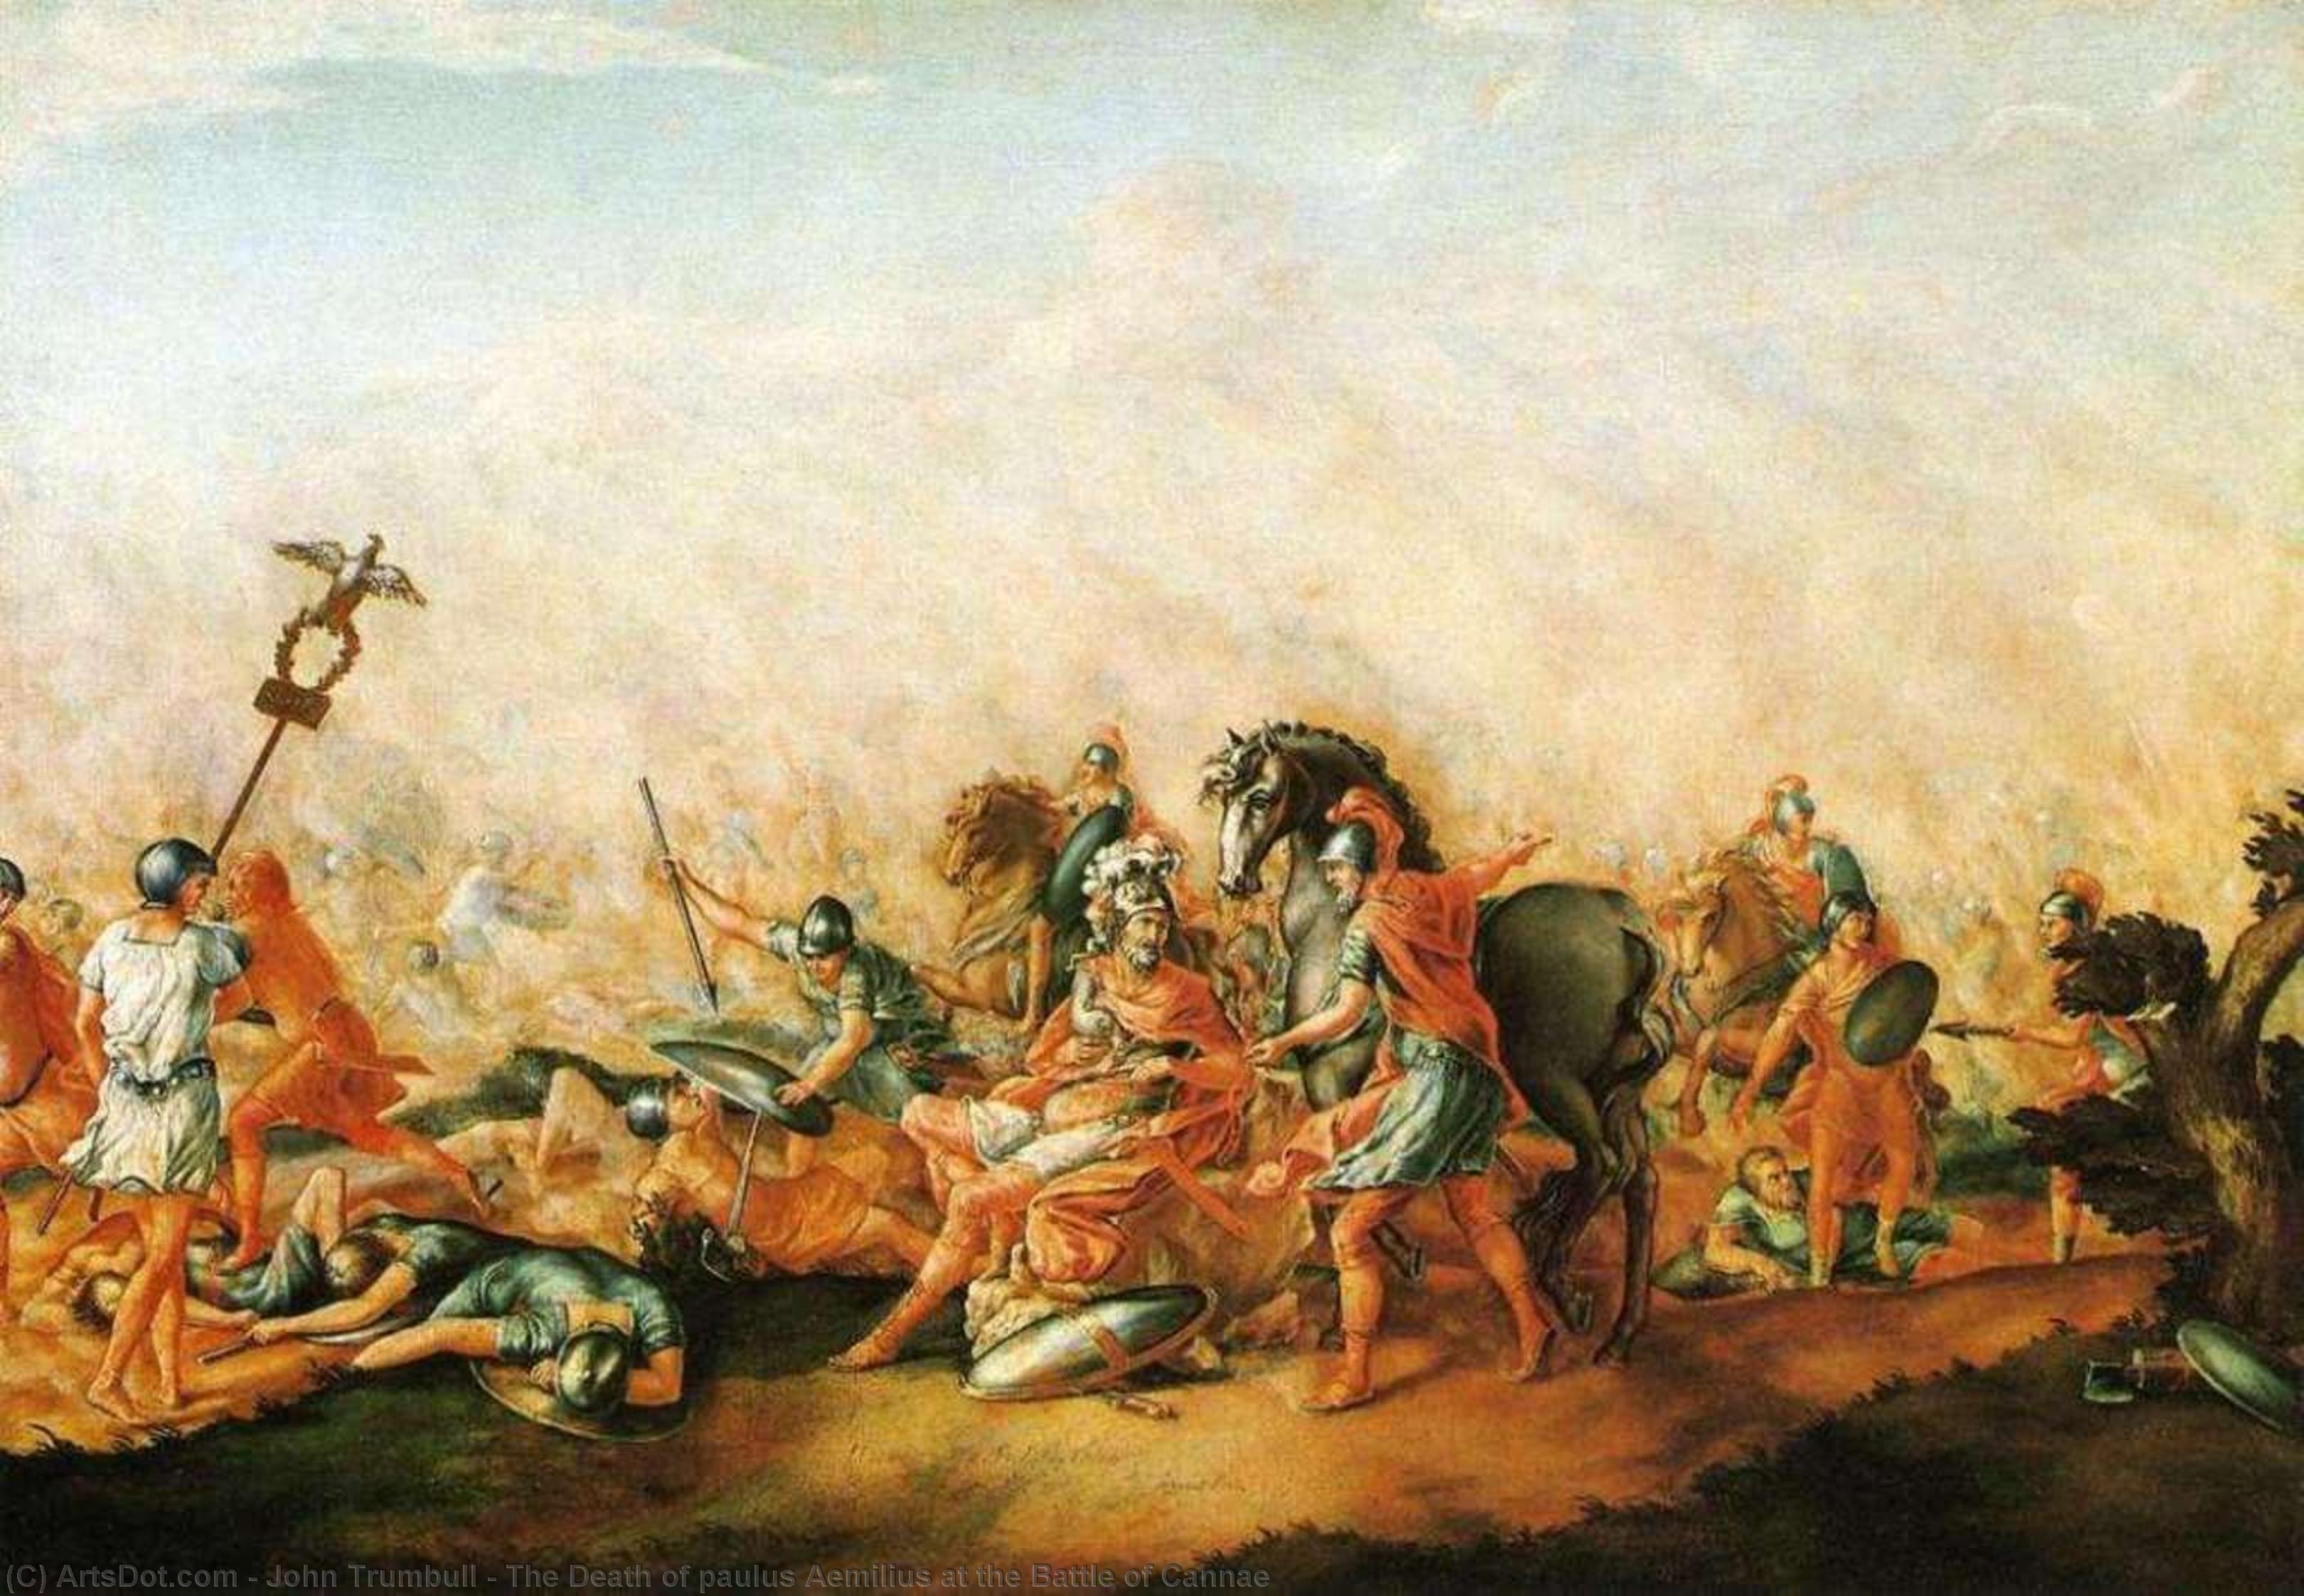 Achat Reproductions De Qualité Musée La mort du paulus Aemilius à la bataille du Cannae, 1773 de John Trumbull (1756-1843, United Kingdom) | ArtsDot.com